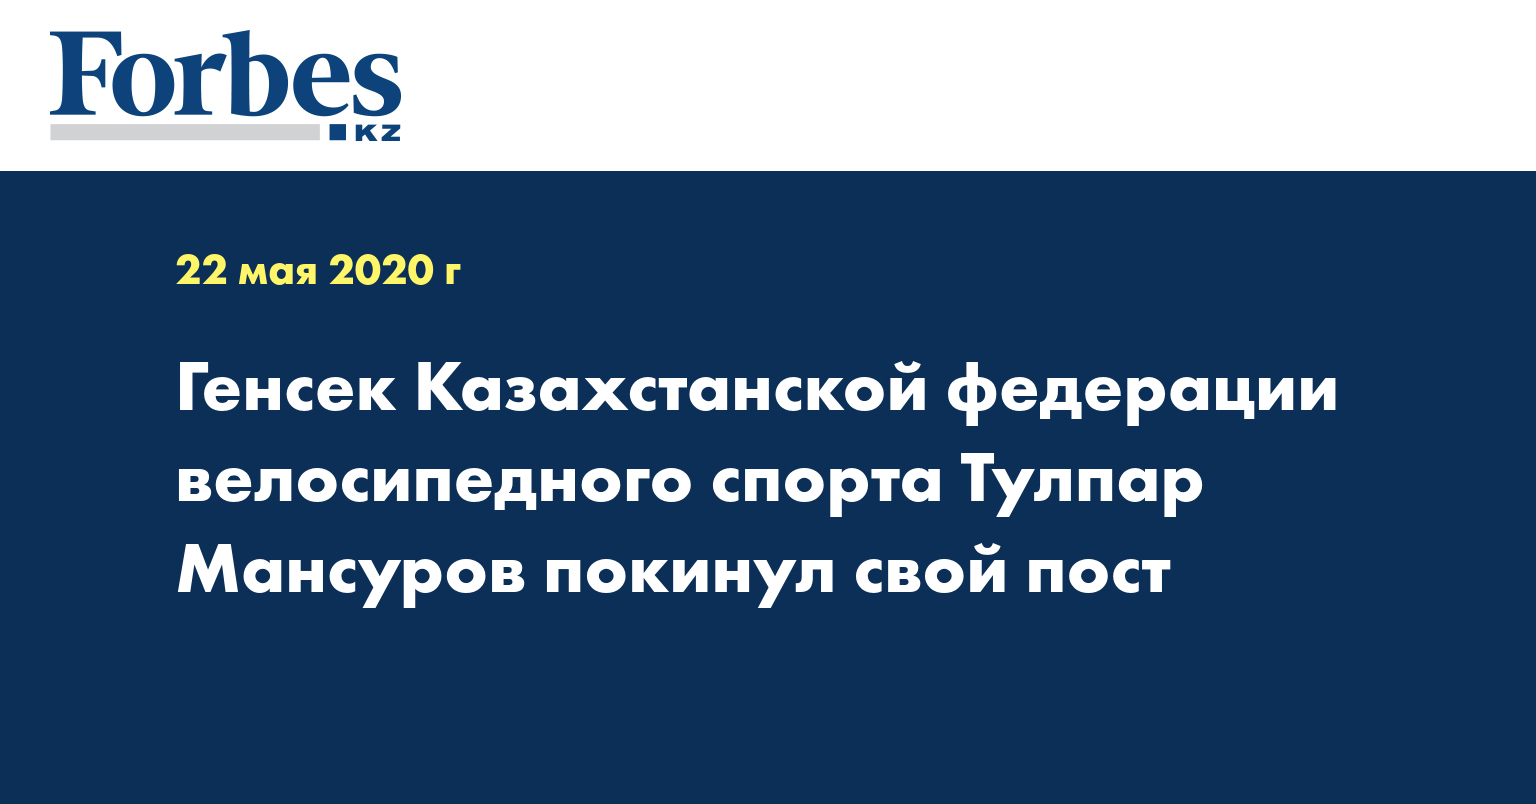 Генсек Казахстанской федерации велосипедного спорта Тулпар Мансуров покинул свой пост